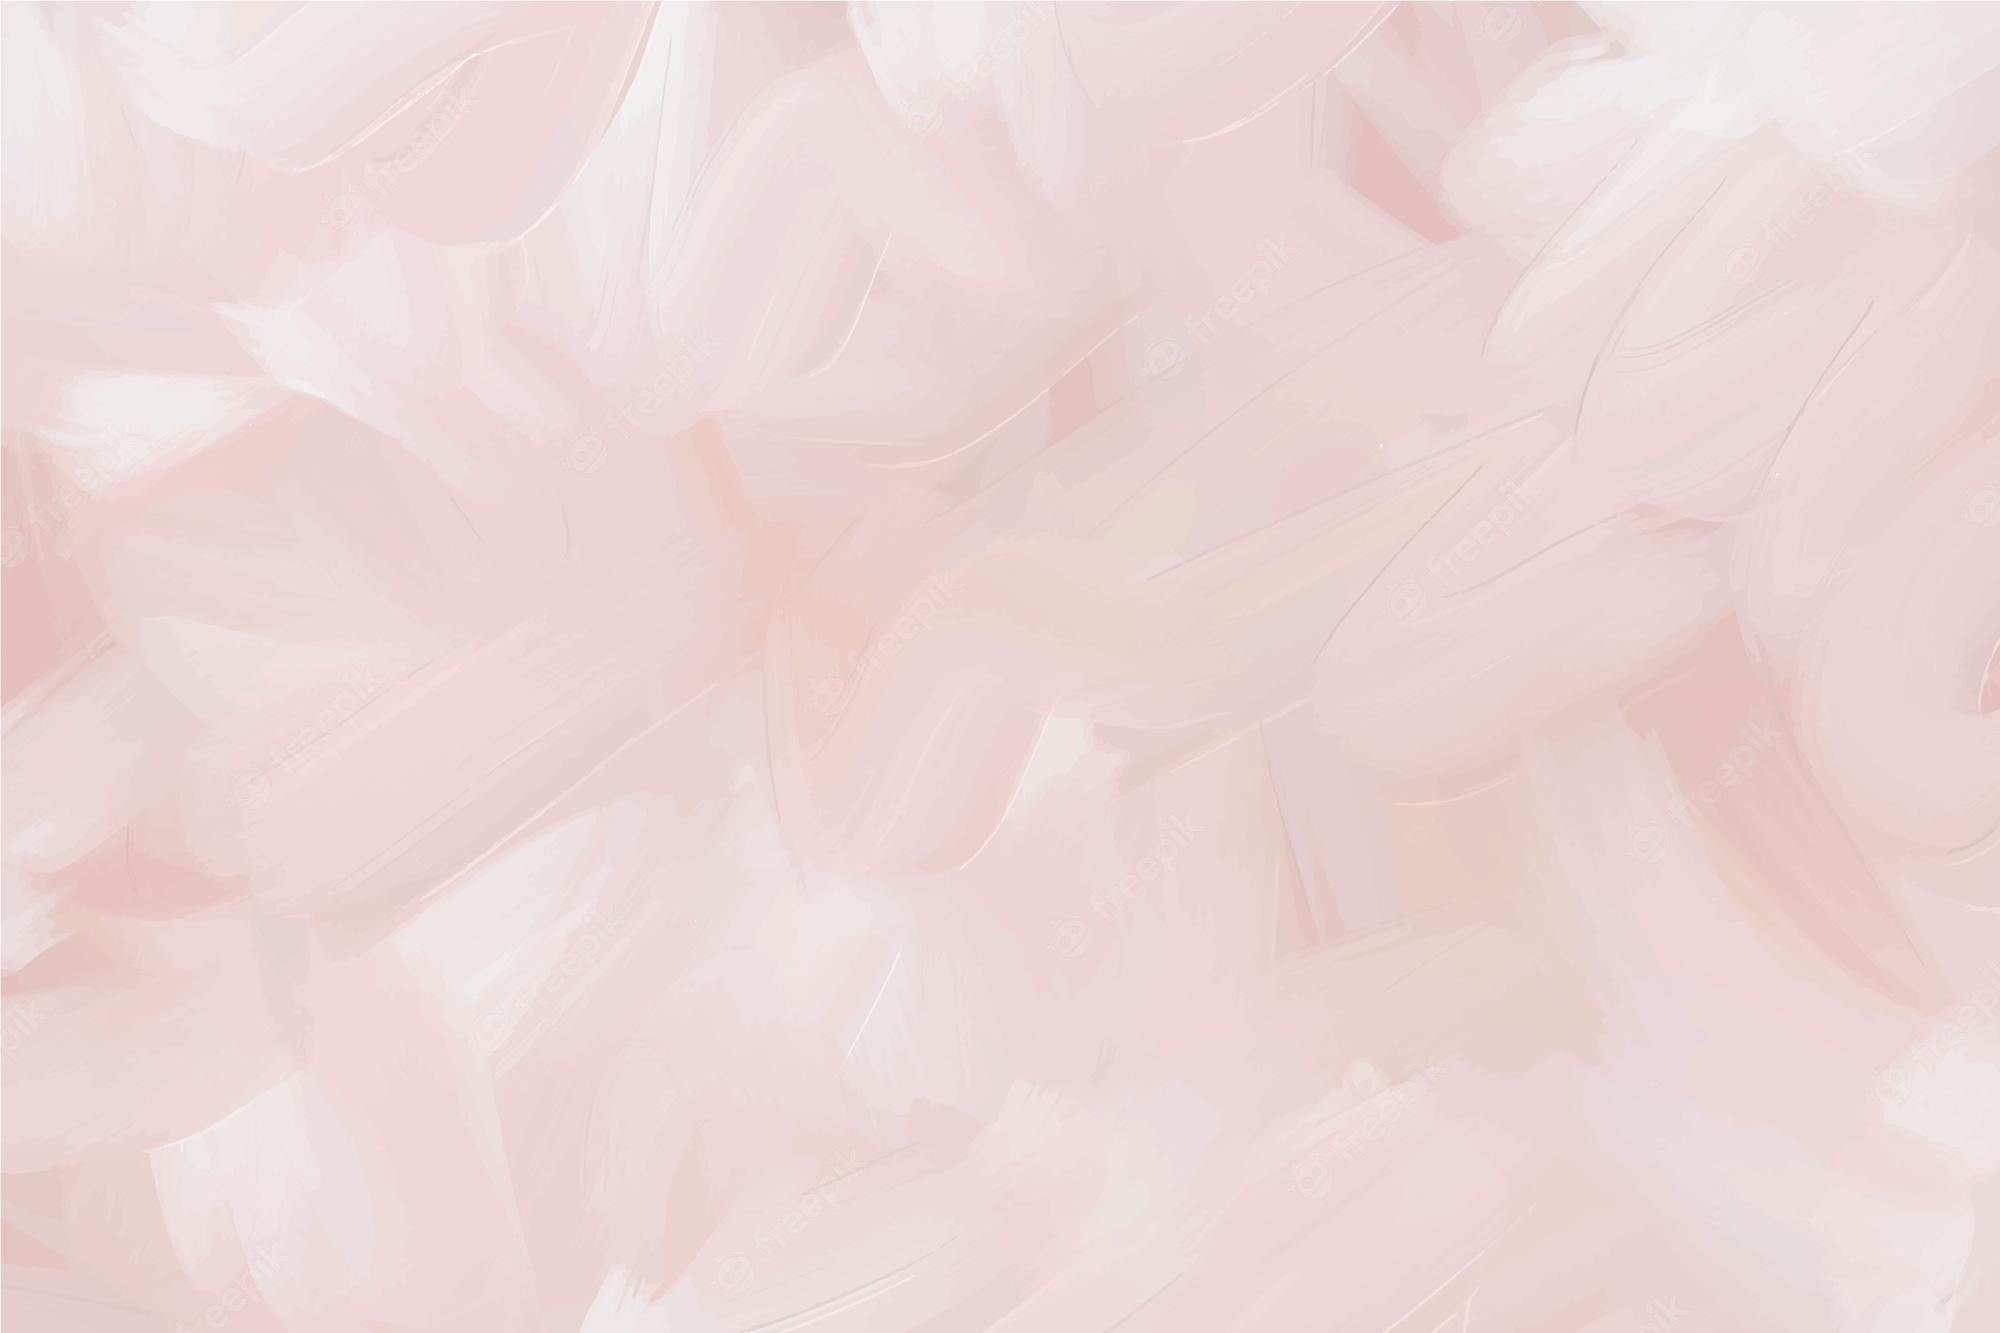 Premium Vector. Pastel white and pink valentines day grunge textured background